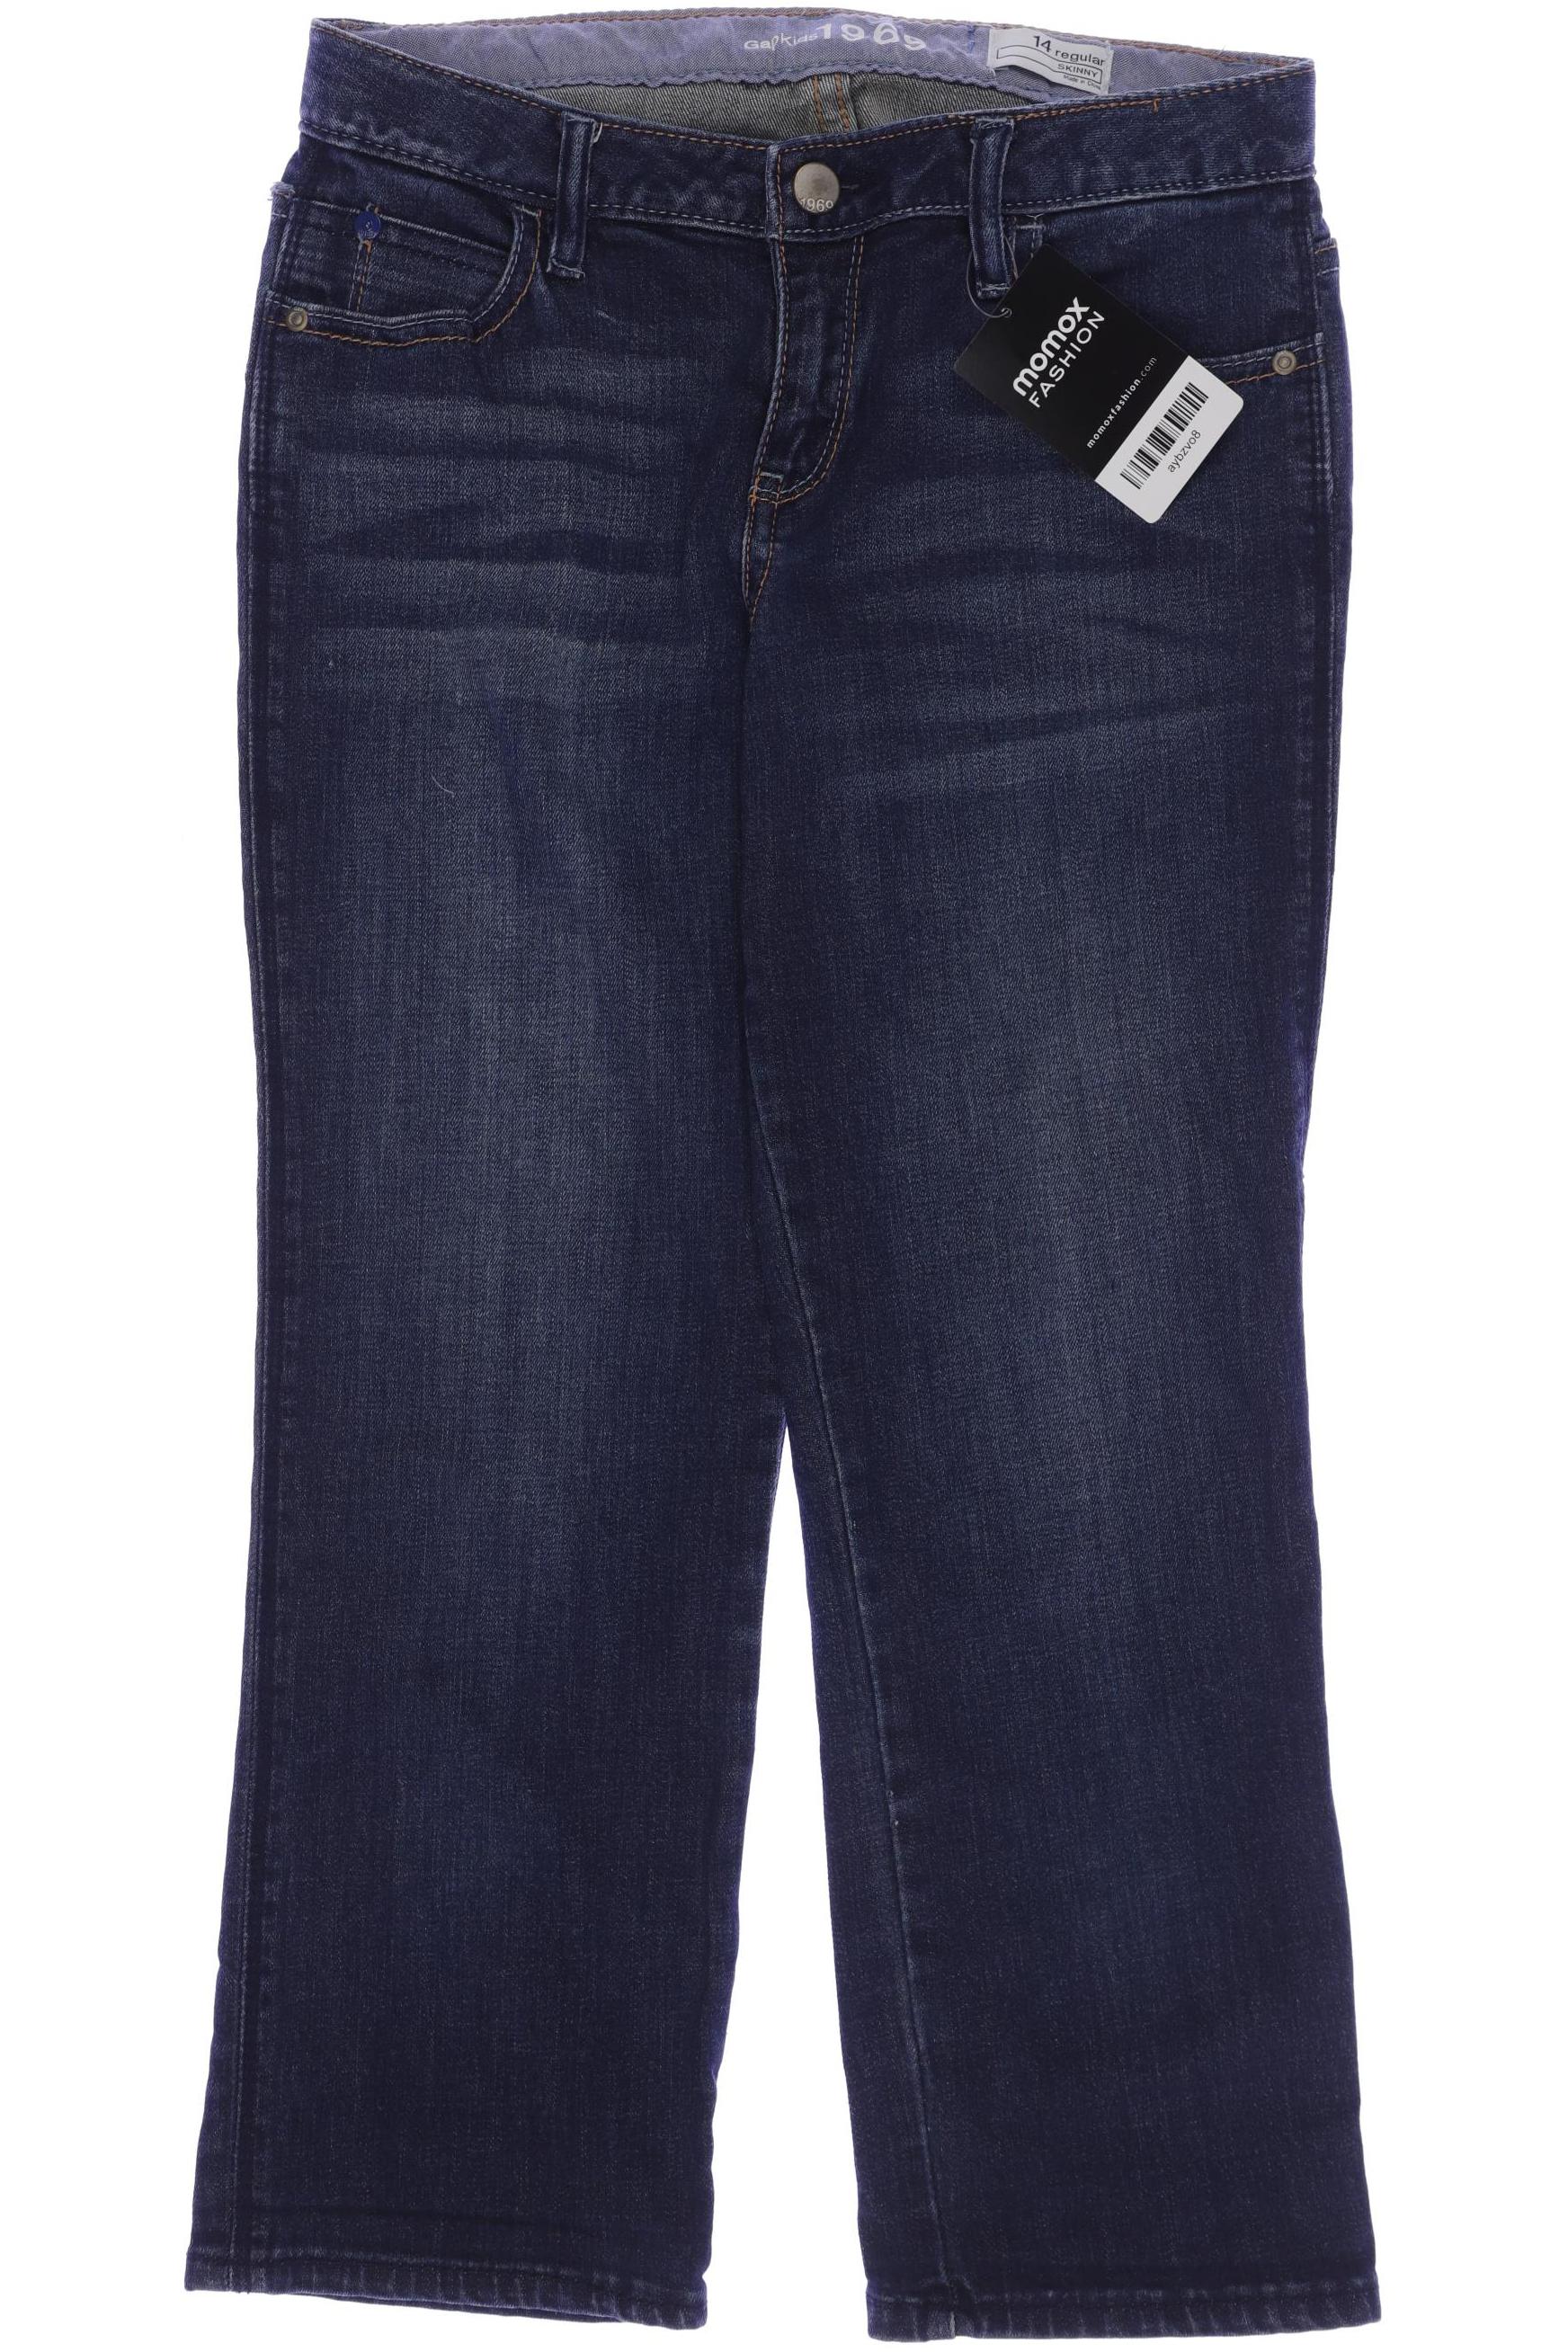 GAP Damen Jeans, marineblau, Gr. 164 von GAP